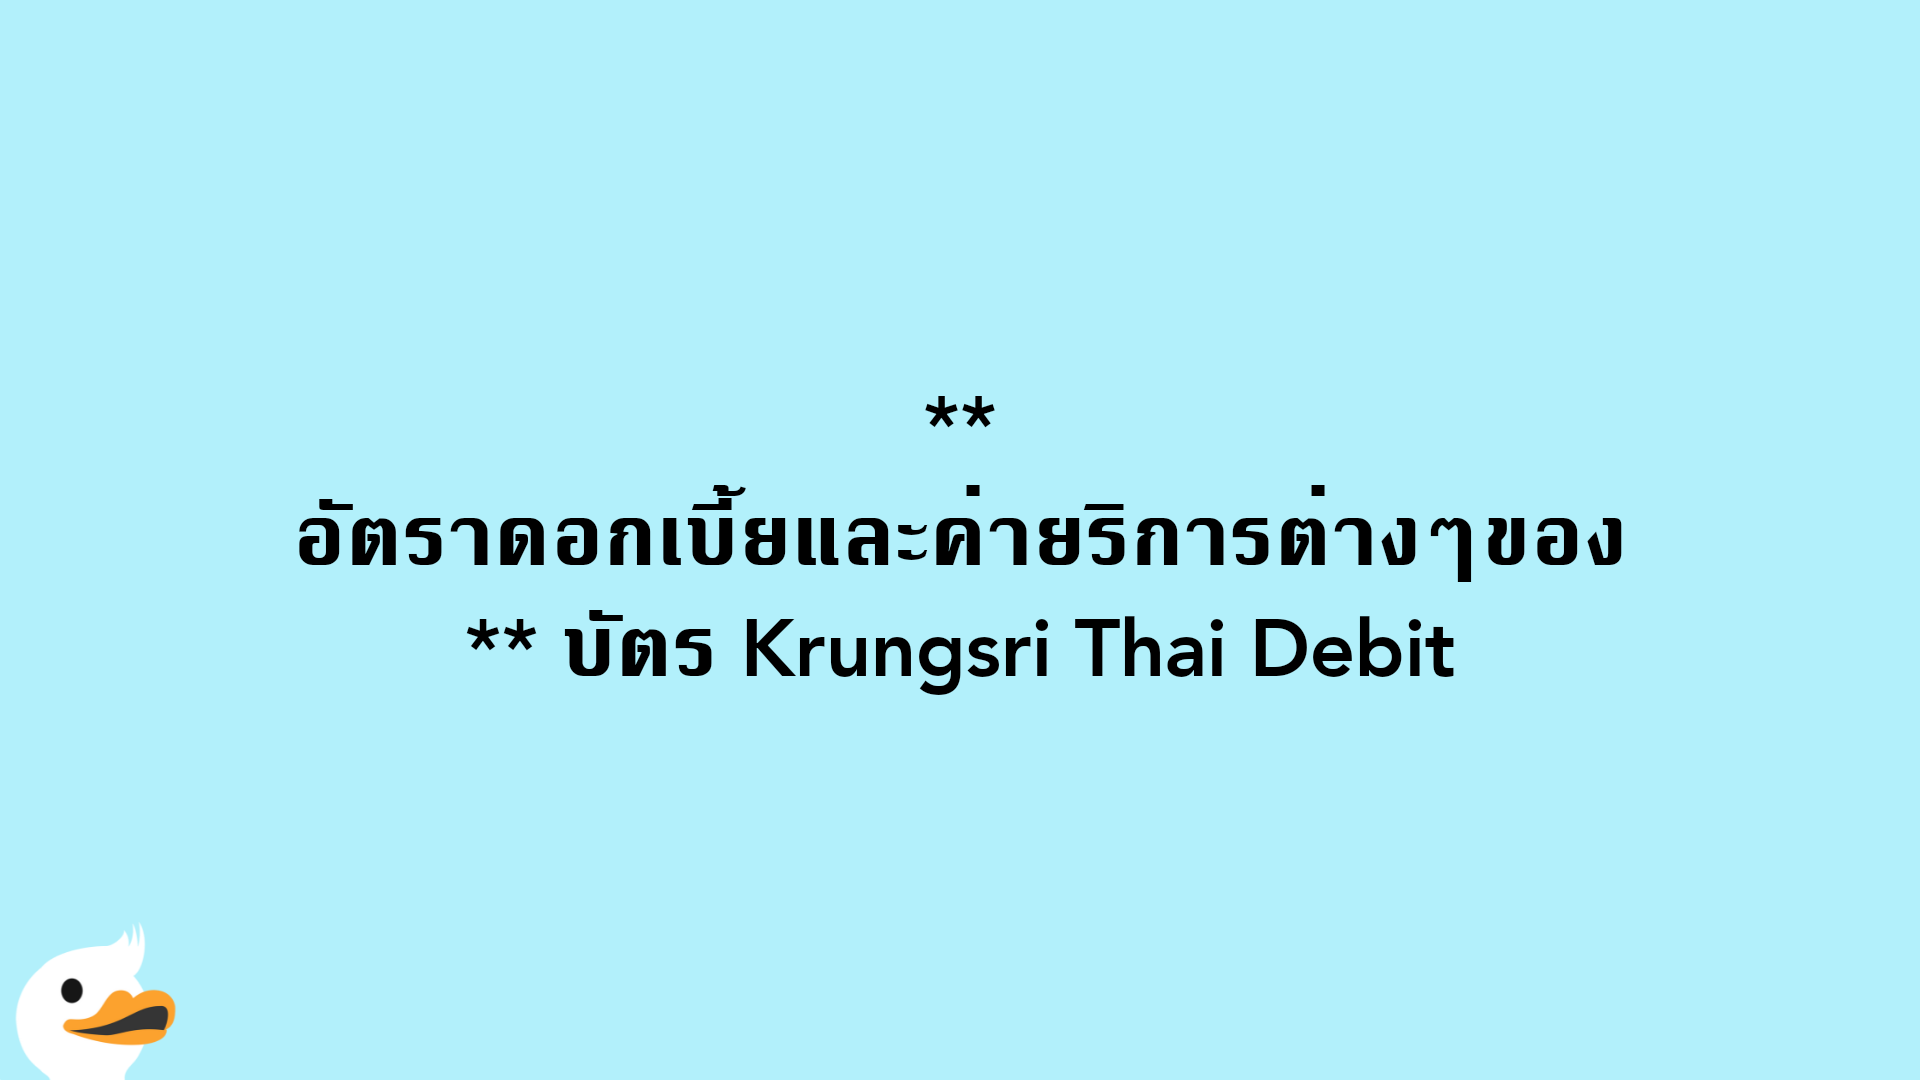 อัตราดอกเบี้ยและค่ายริการต่างๆของ บัตร Krungsri Thai Debit